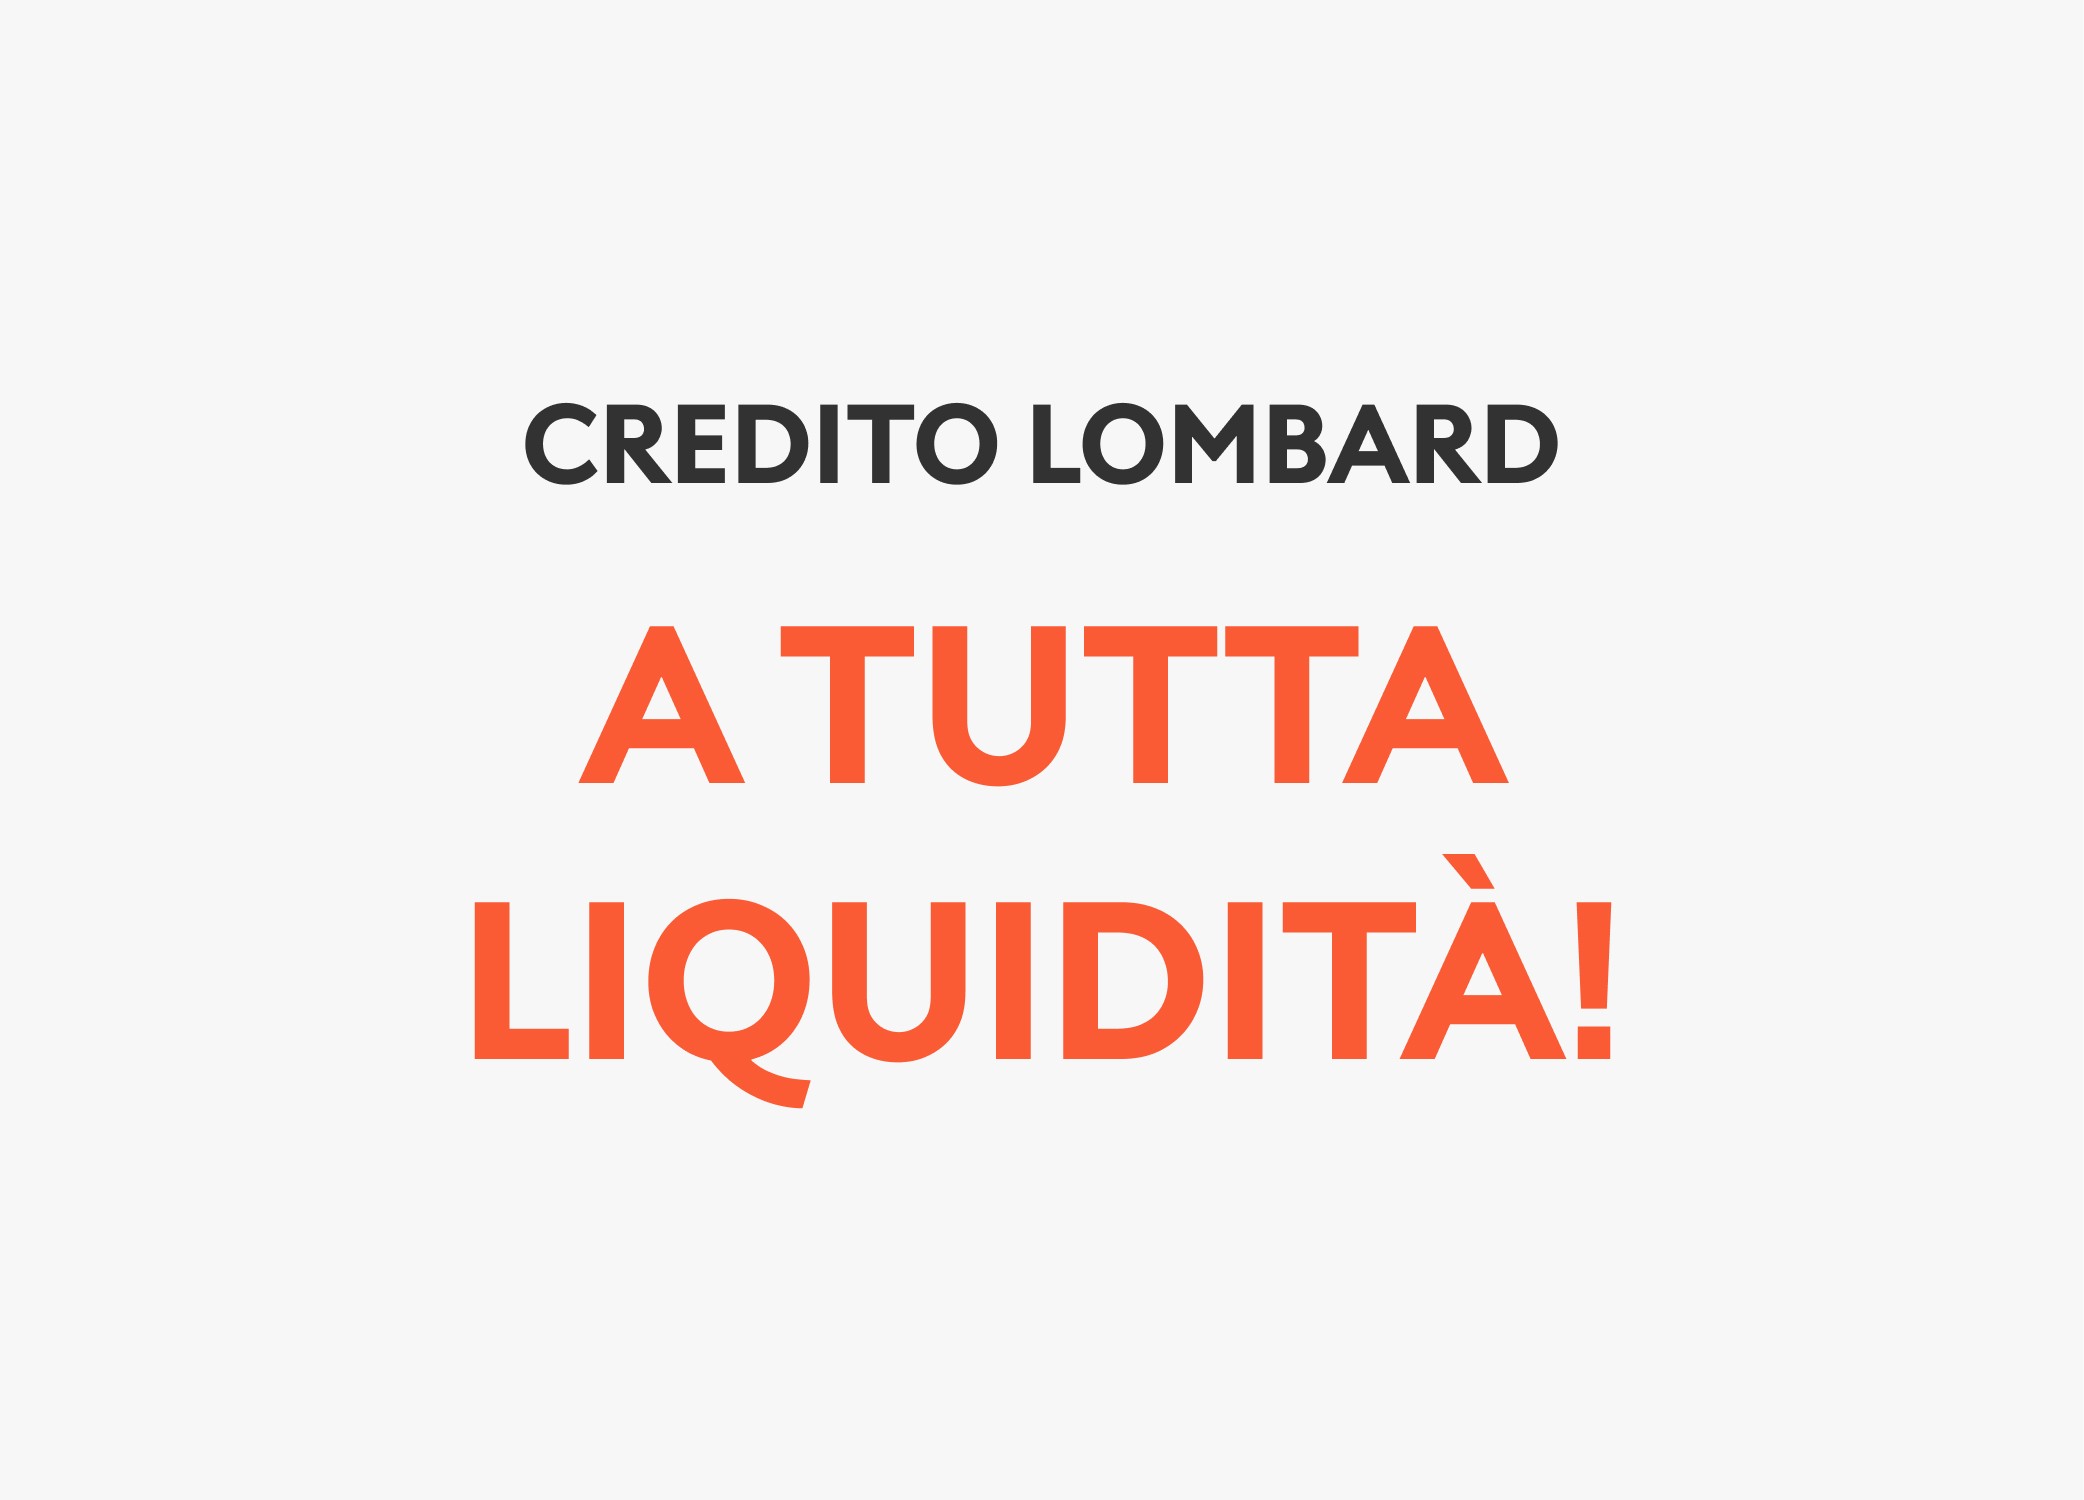 Credito lombard: a tutta liquidità!